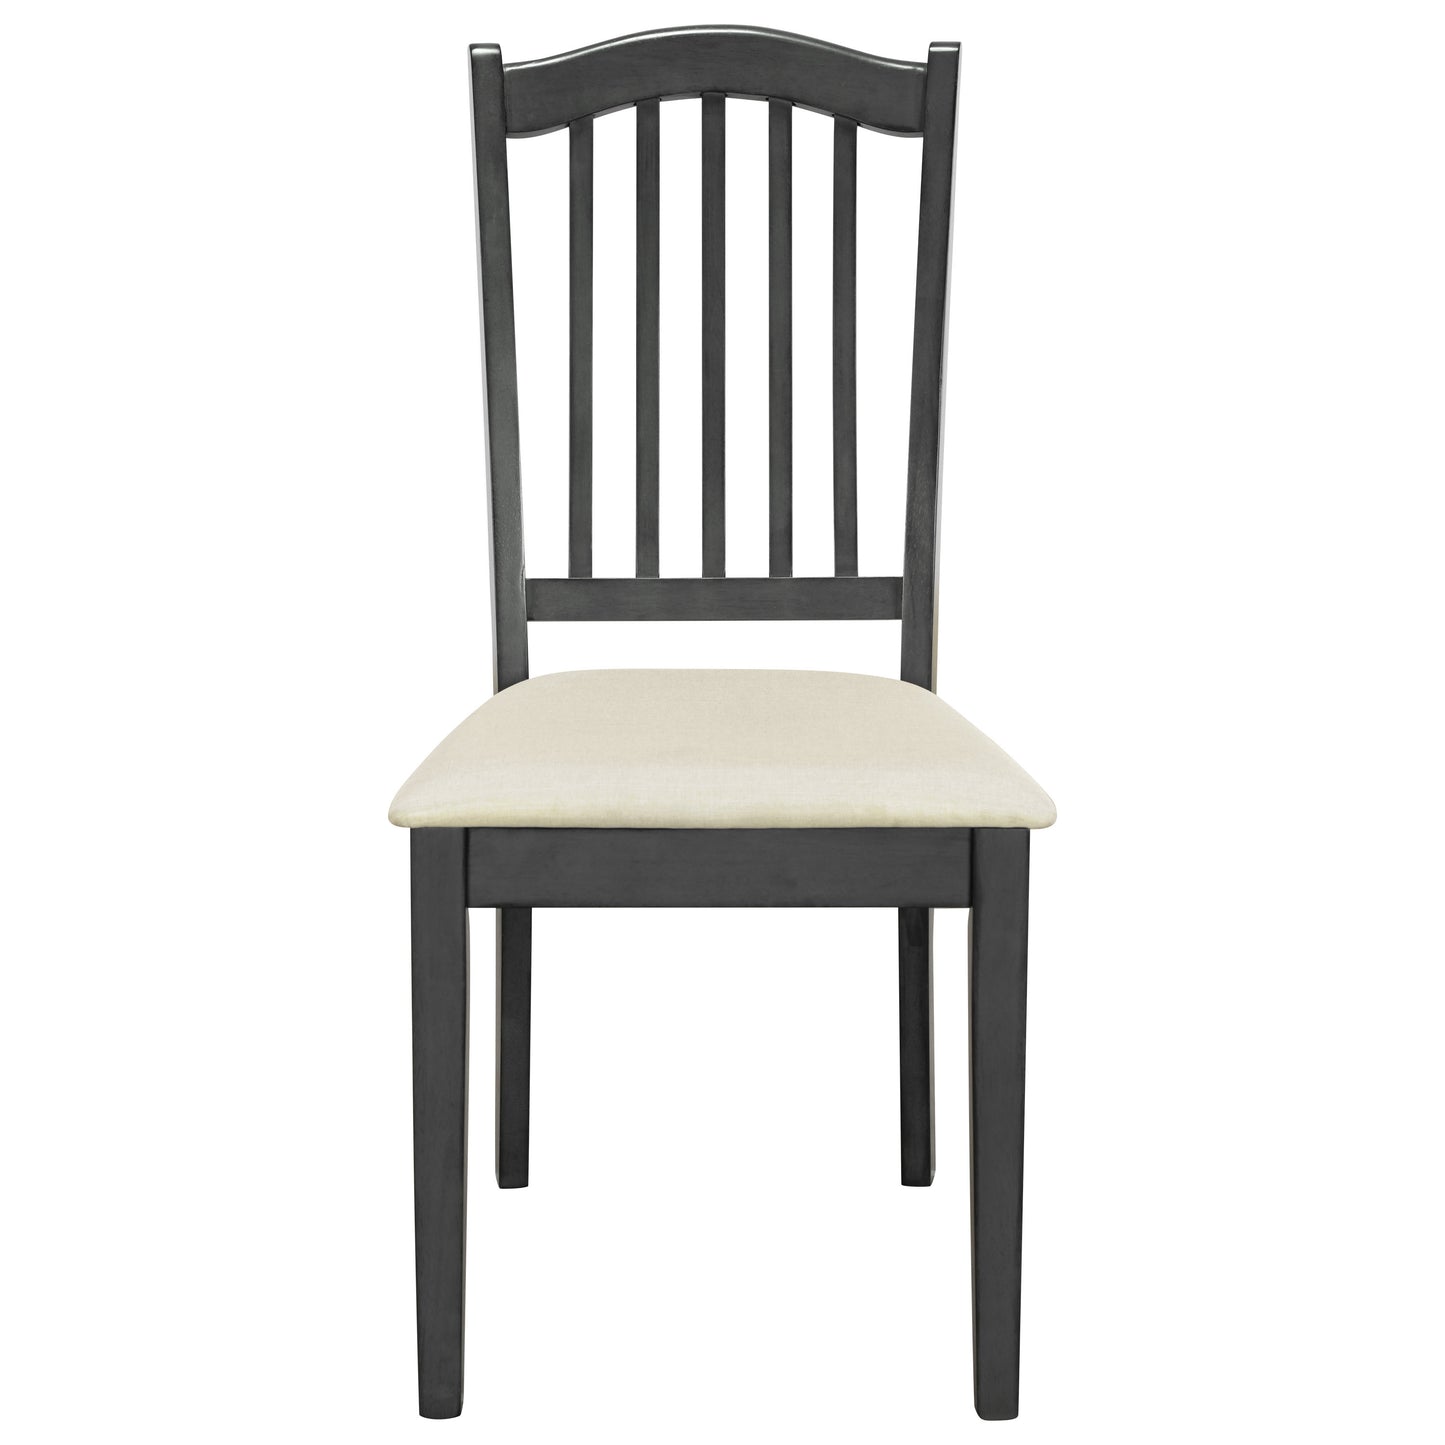 Juego de comedor rústico de 6 piezas, mesa rectangular con estructura en X y 4 sillas y banco tapizados (gris)